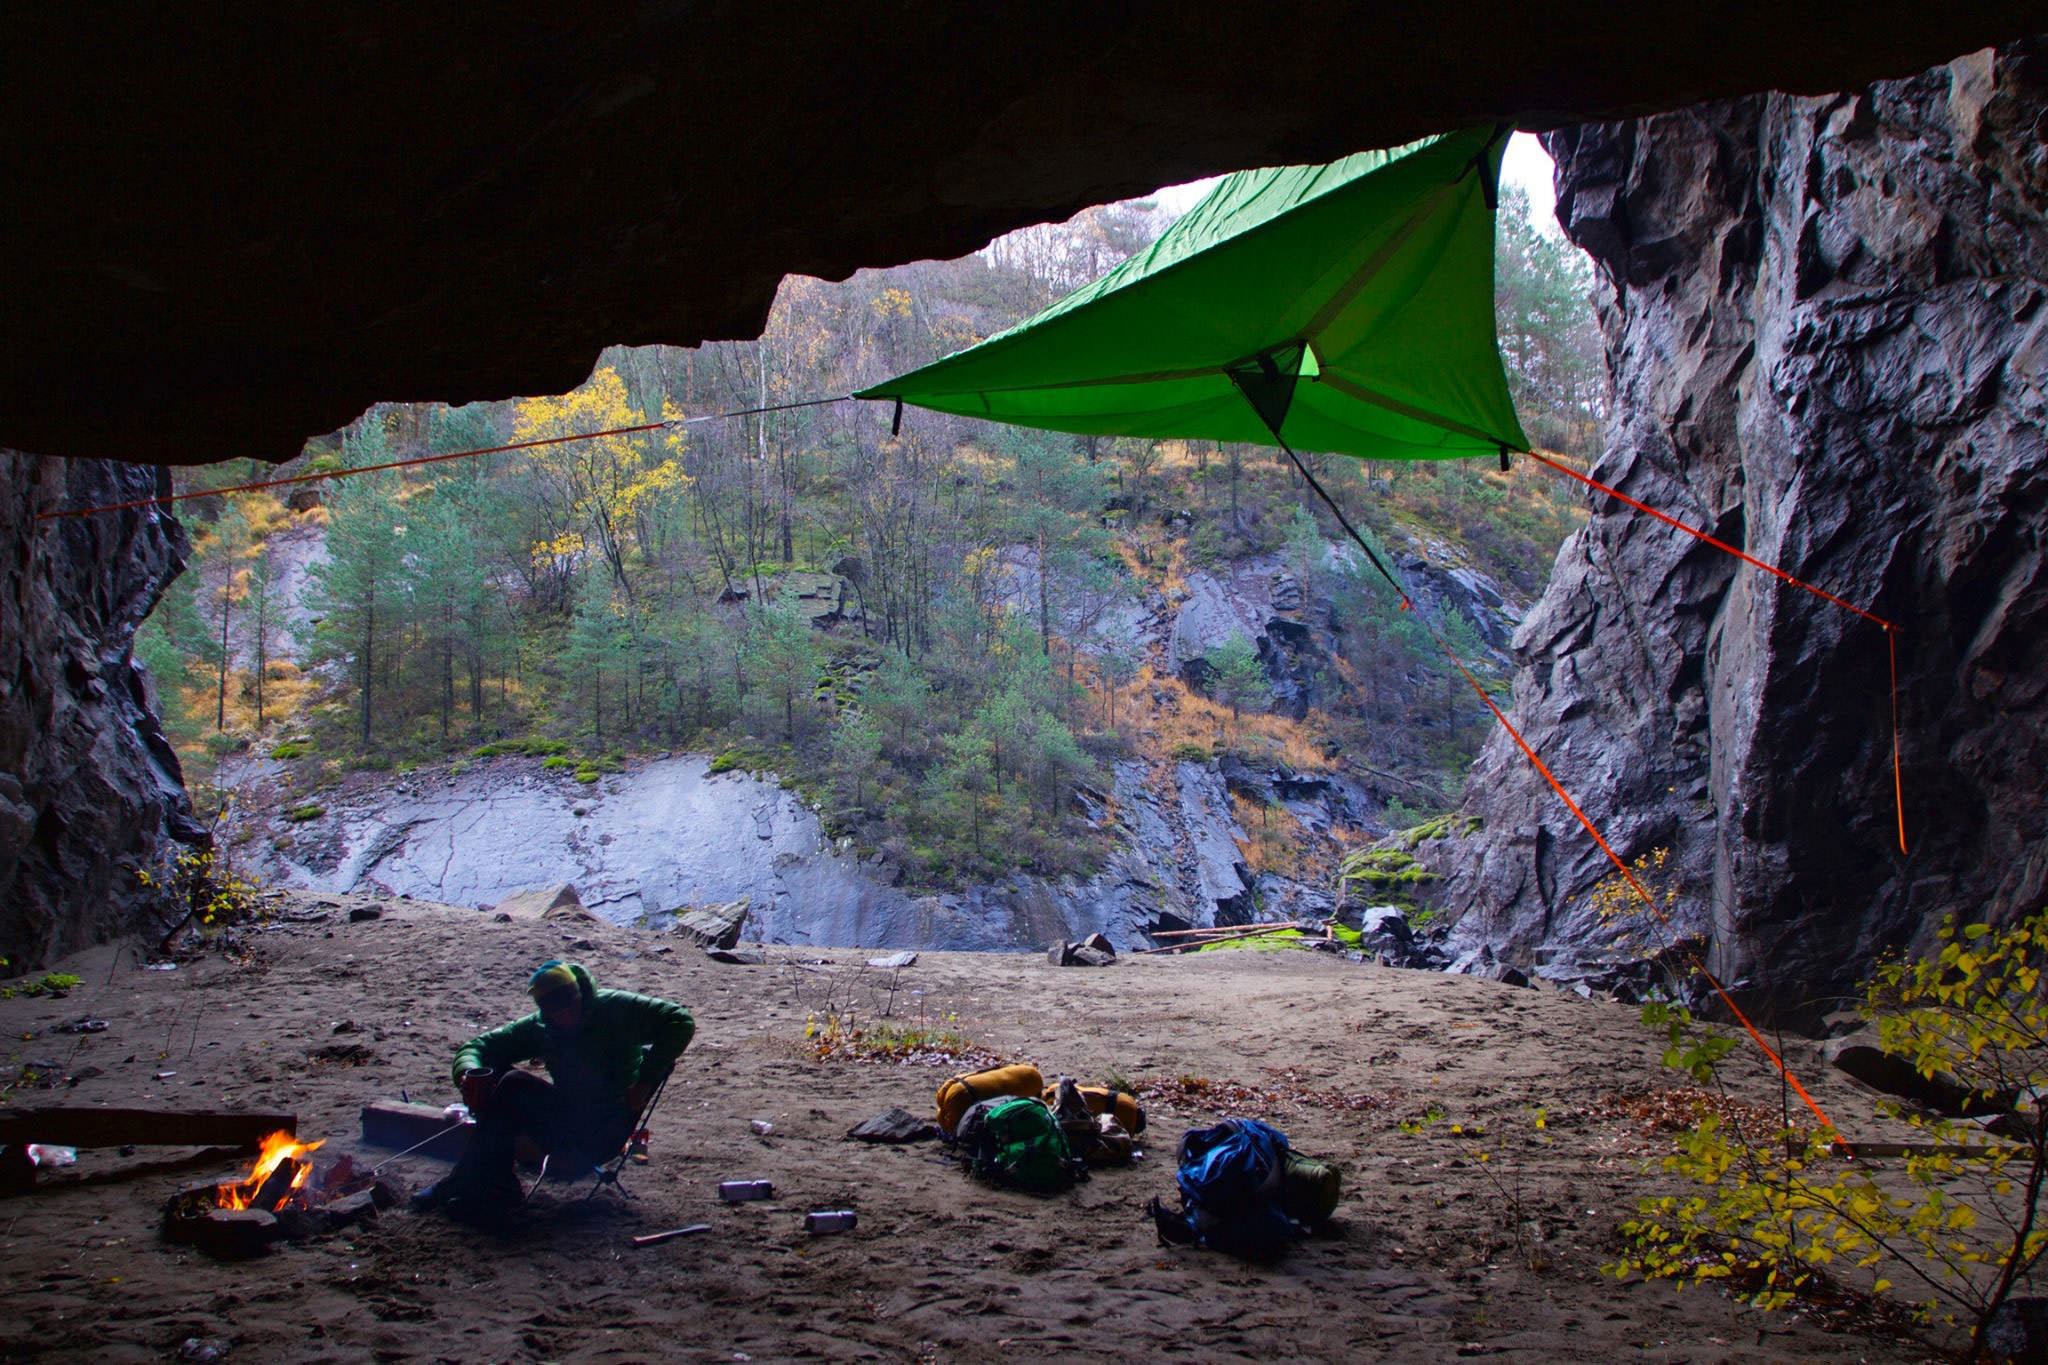 tentsile-hammock-tree-tent-caving-adventure-outdoor